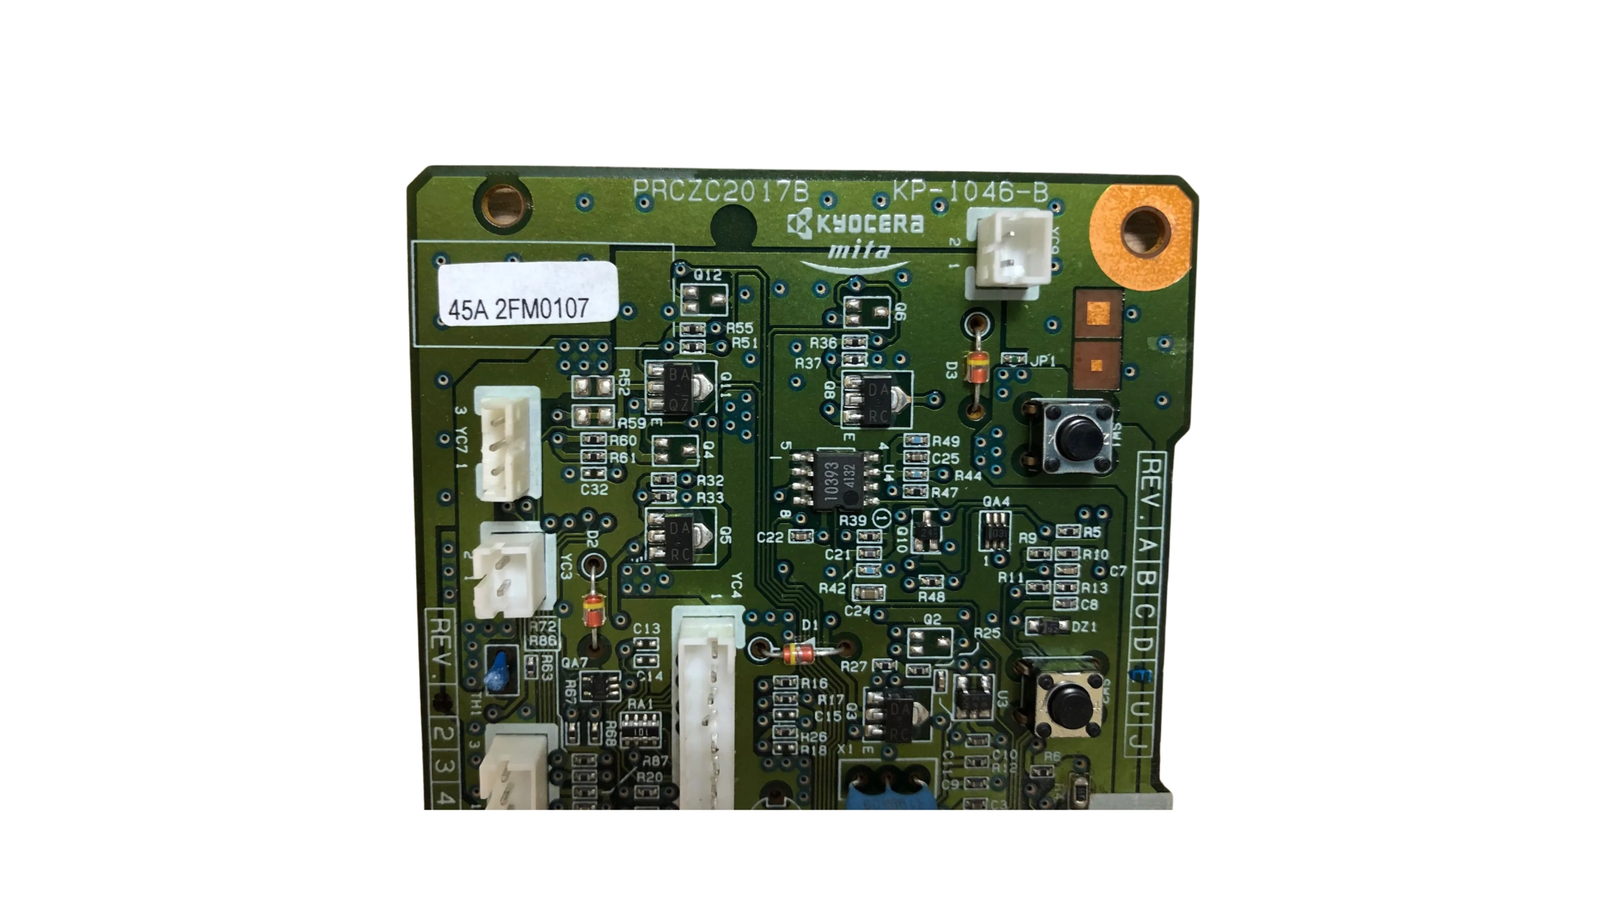 2FM0107 controller for Kyocera FS-1020d